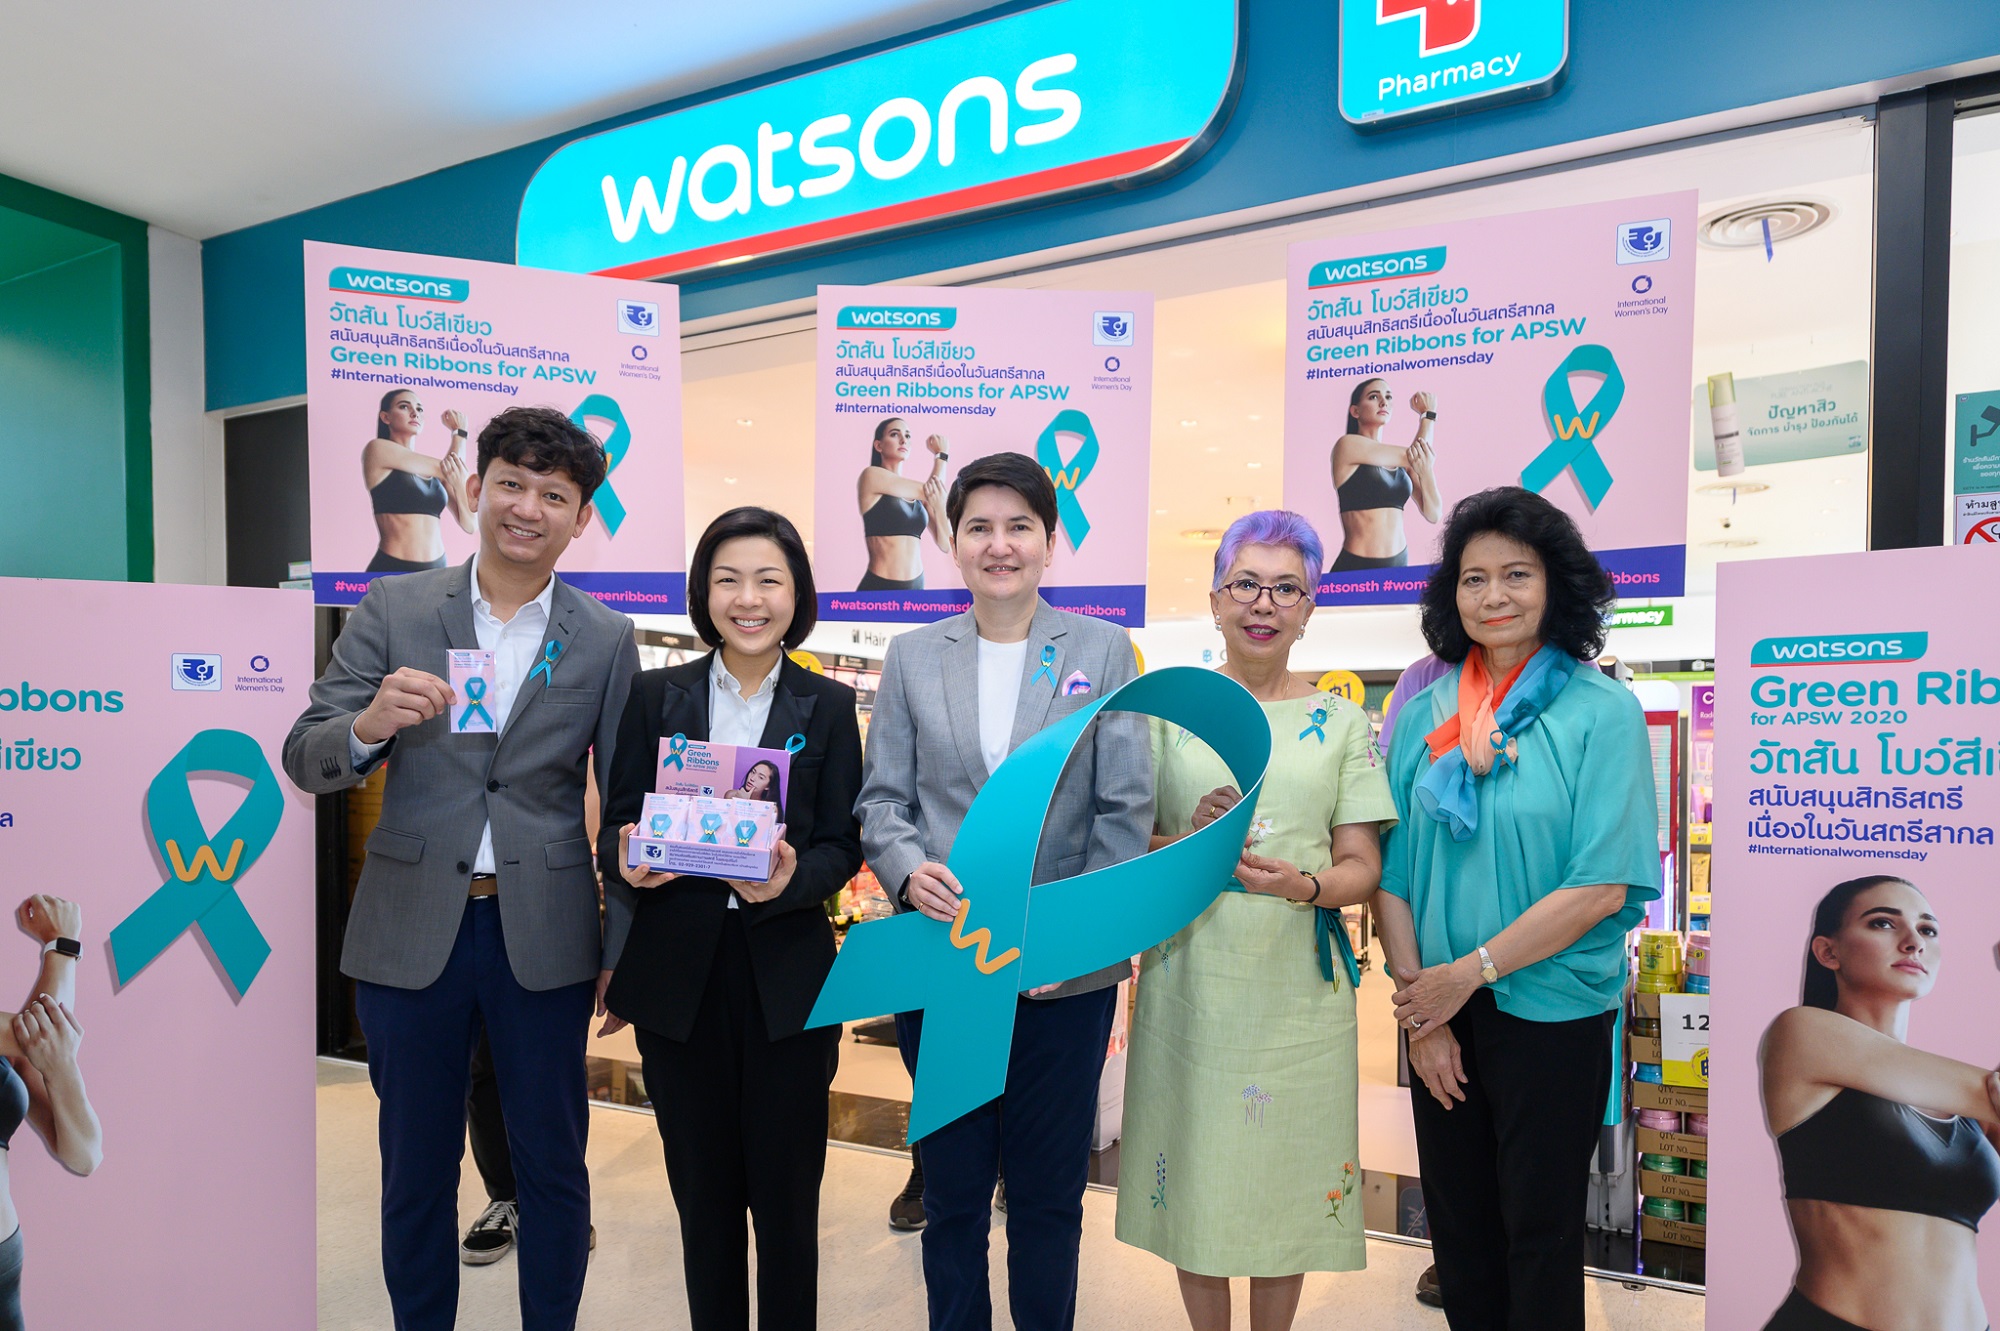 ภาพข่าว: วัตสัน จัดกิจกรรม Watsons Green Ribbons ระดมทุนจากการจำหน่ายวัตสันโบว์เขียว มอบเงินรายได้ให้กับบ้านพักฉุกเฉิน เพื่อช่วยเหลือเด็กและสตรีในประเทศไทย